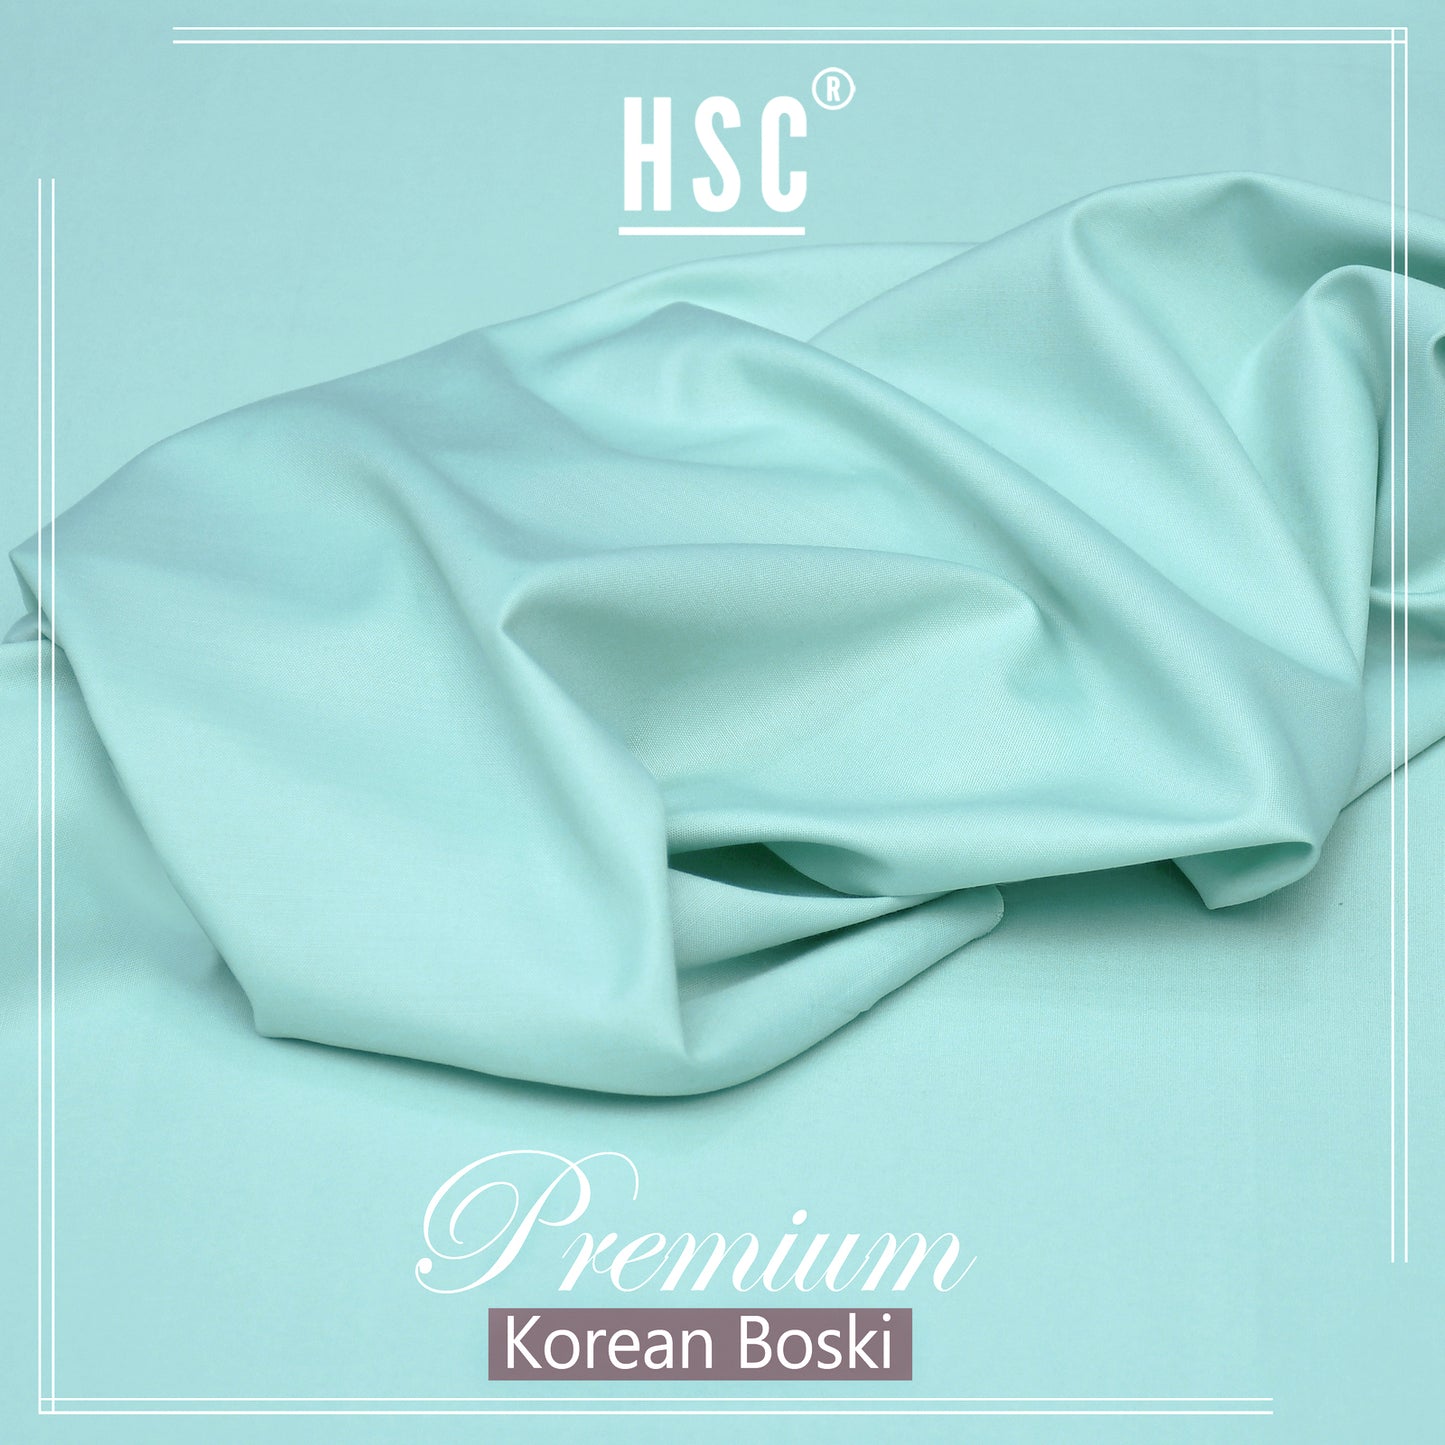 Buy1 Get 1 Free Premium Korean Boski For Men - NPKB9 HSC